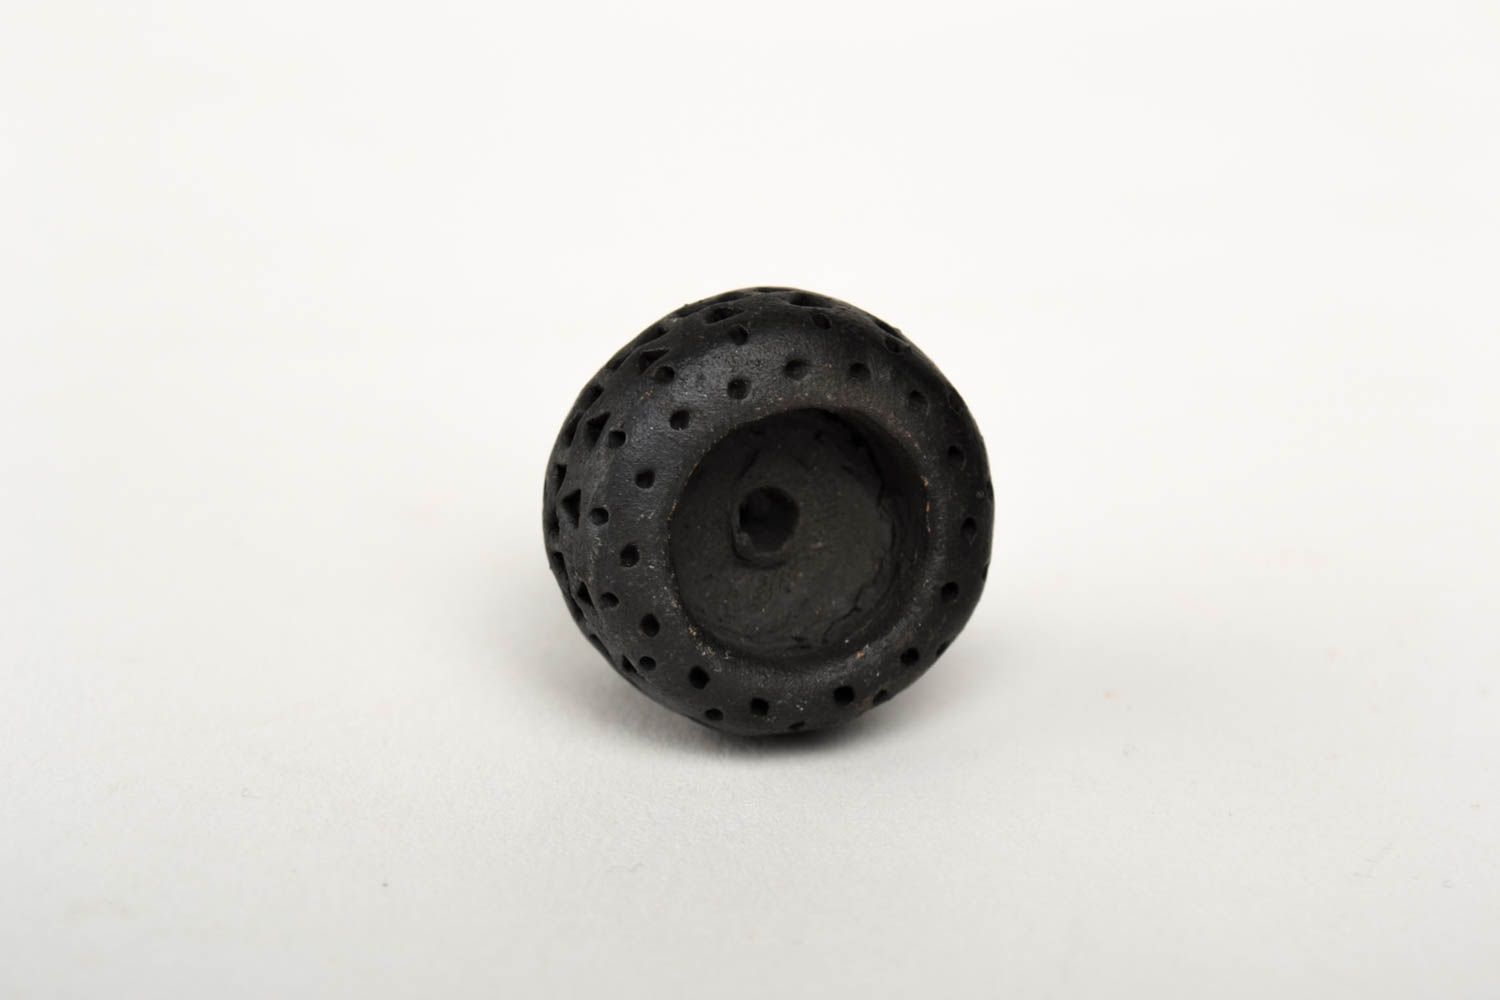 Курительная принадлежность хэнд мейд керамический сувенир изделие из глины фото 5